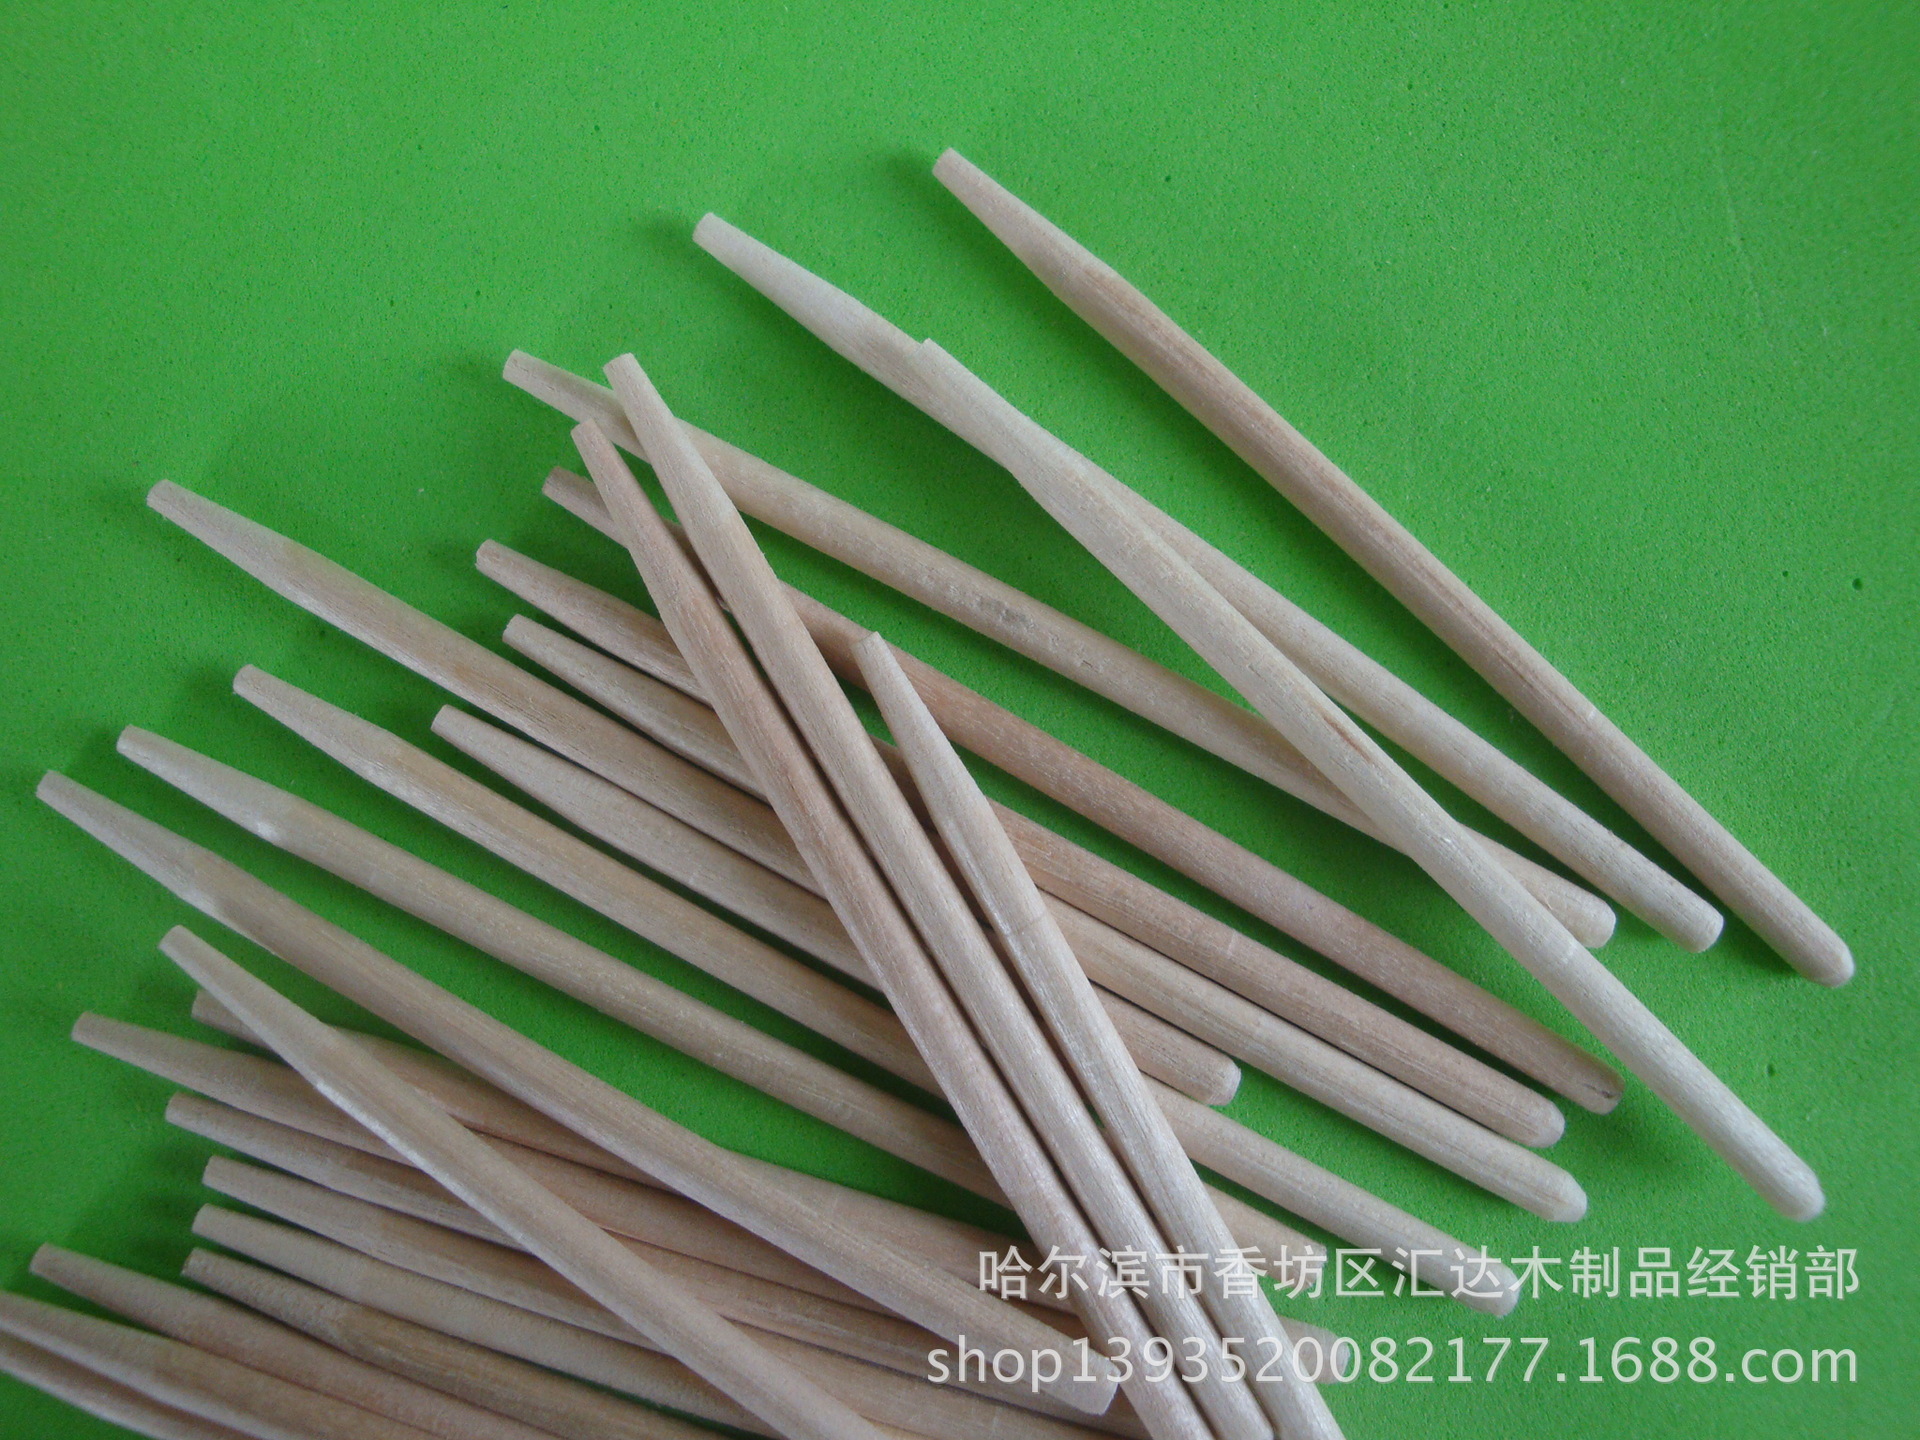 厂家供应棒糖棒 木质棒糖棒 环保磨尖棒糖棒 一次性棒糖棒示例图5